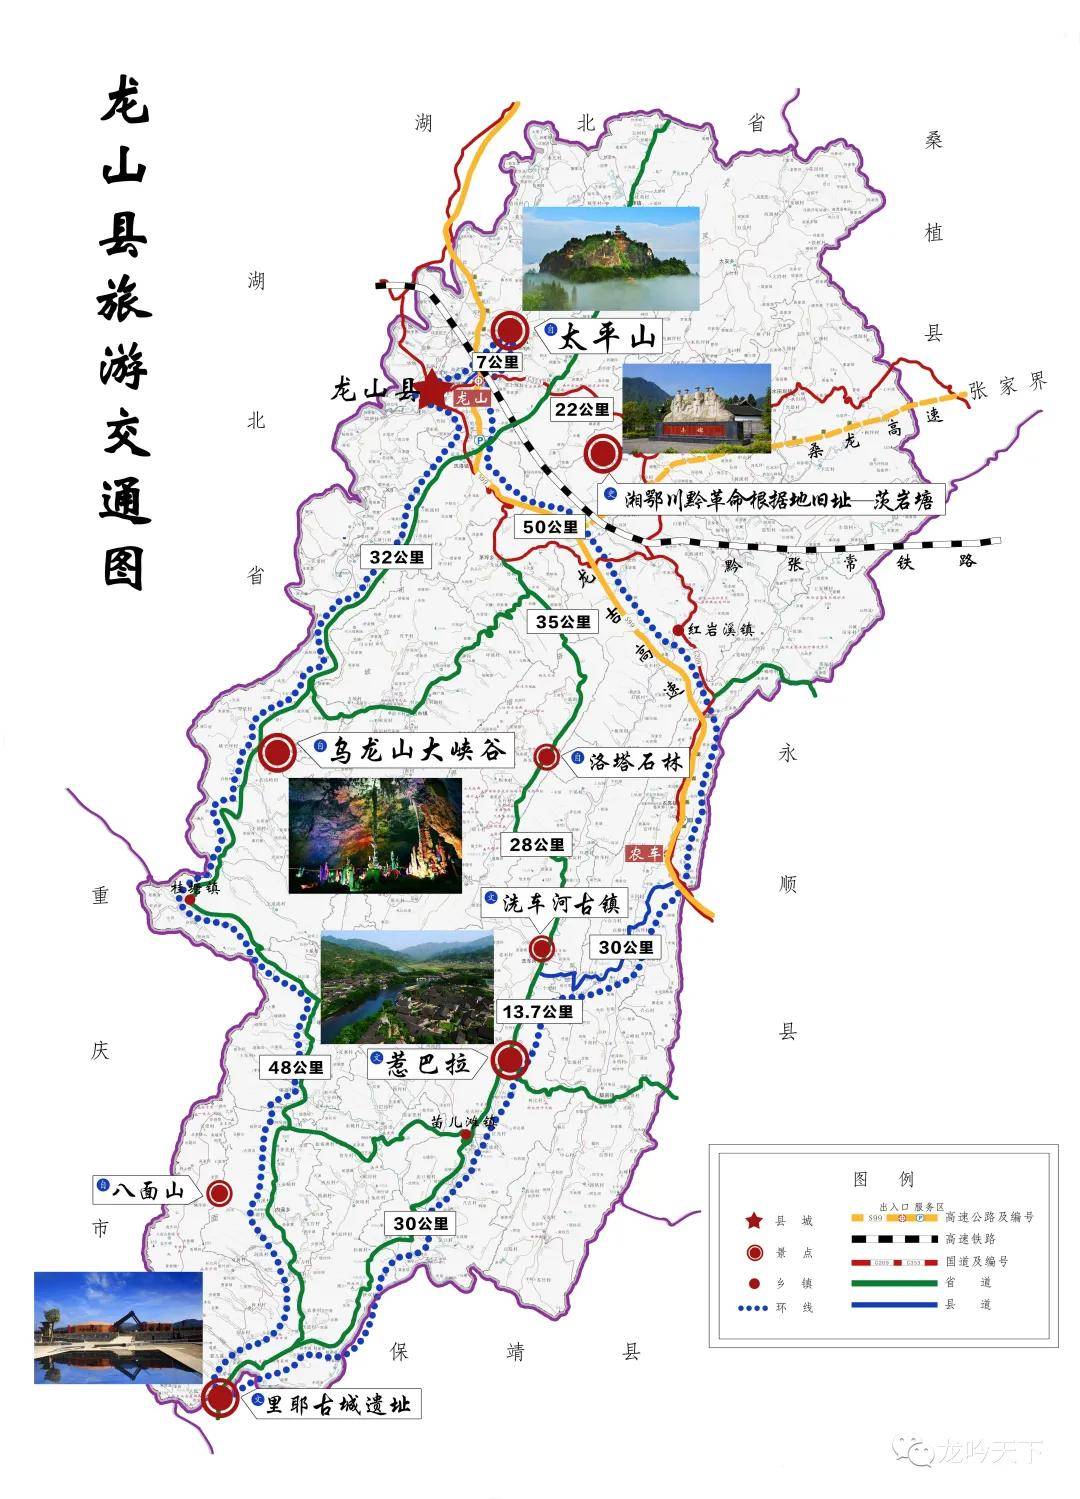 龙山县旅游交通地图(可点击放大) 作者龙